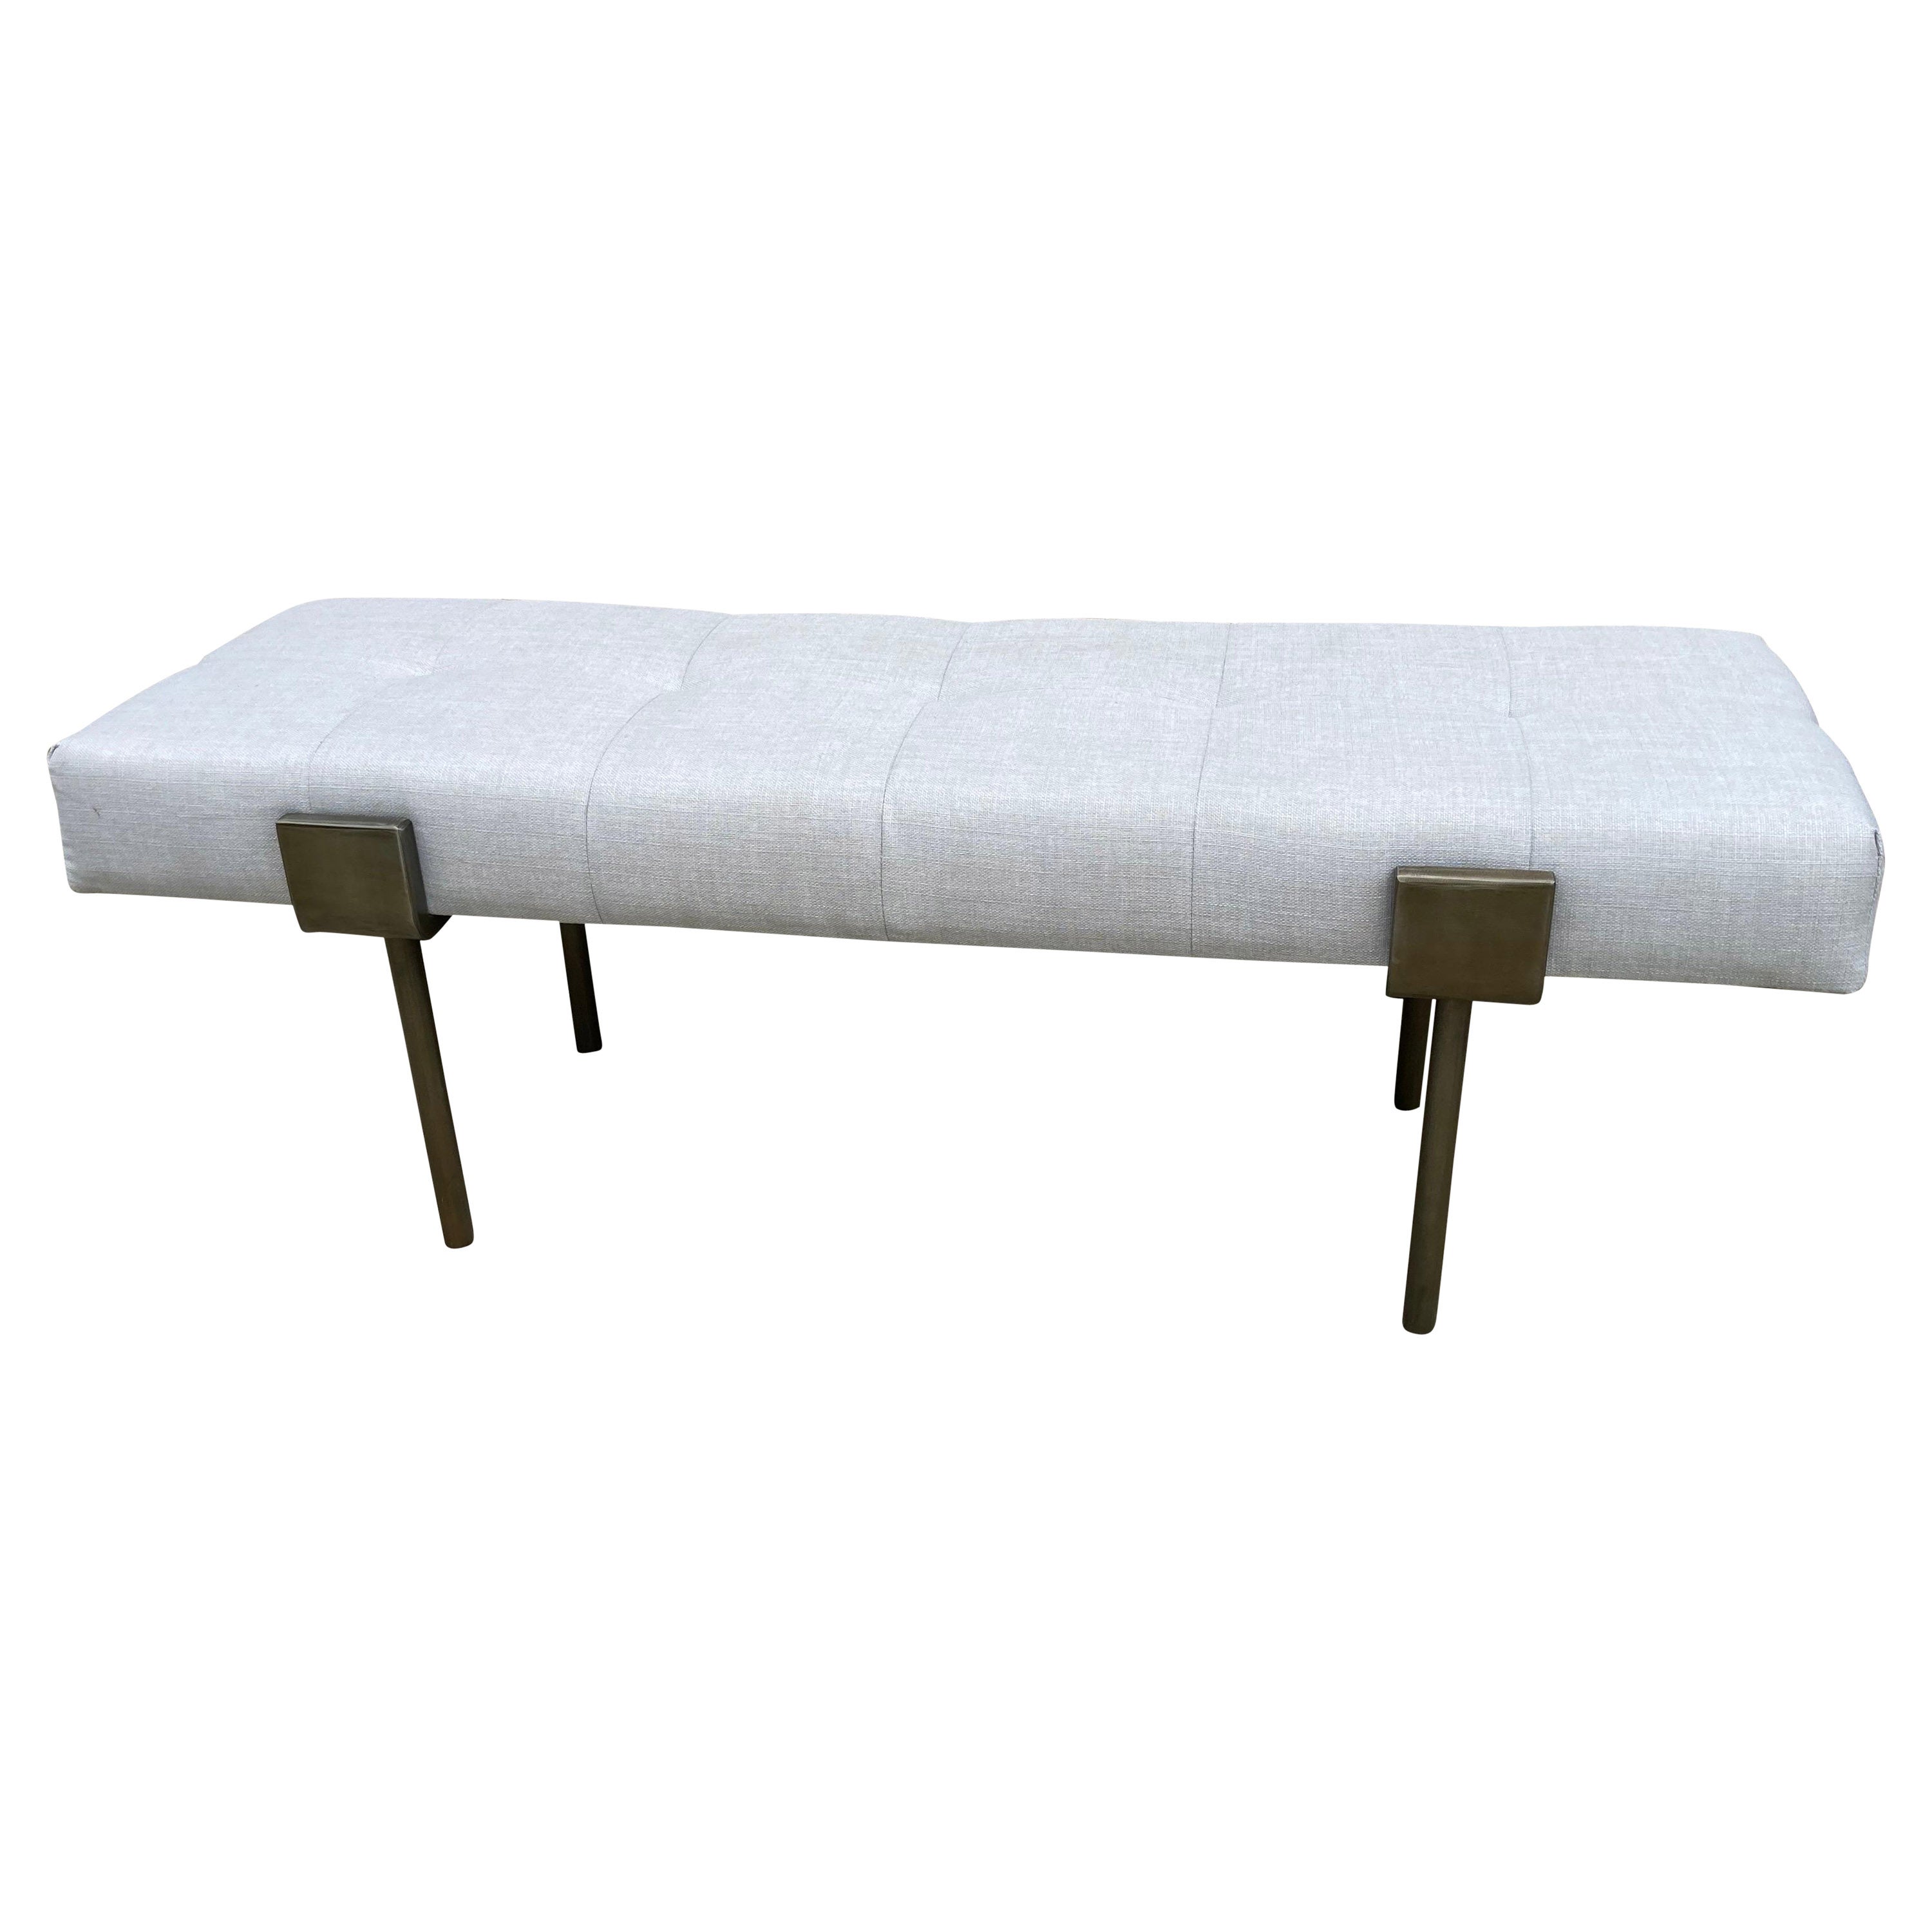 Modern Linen Upholstered Metal Framed Bench